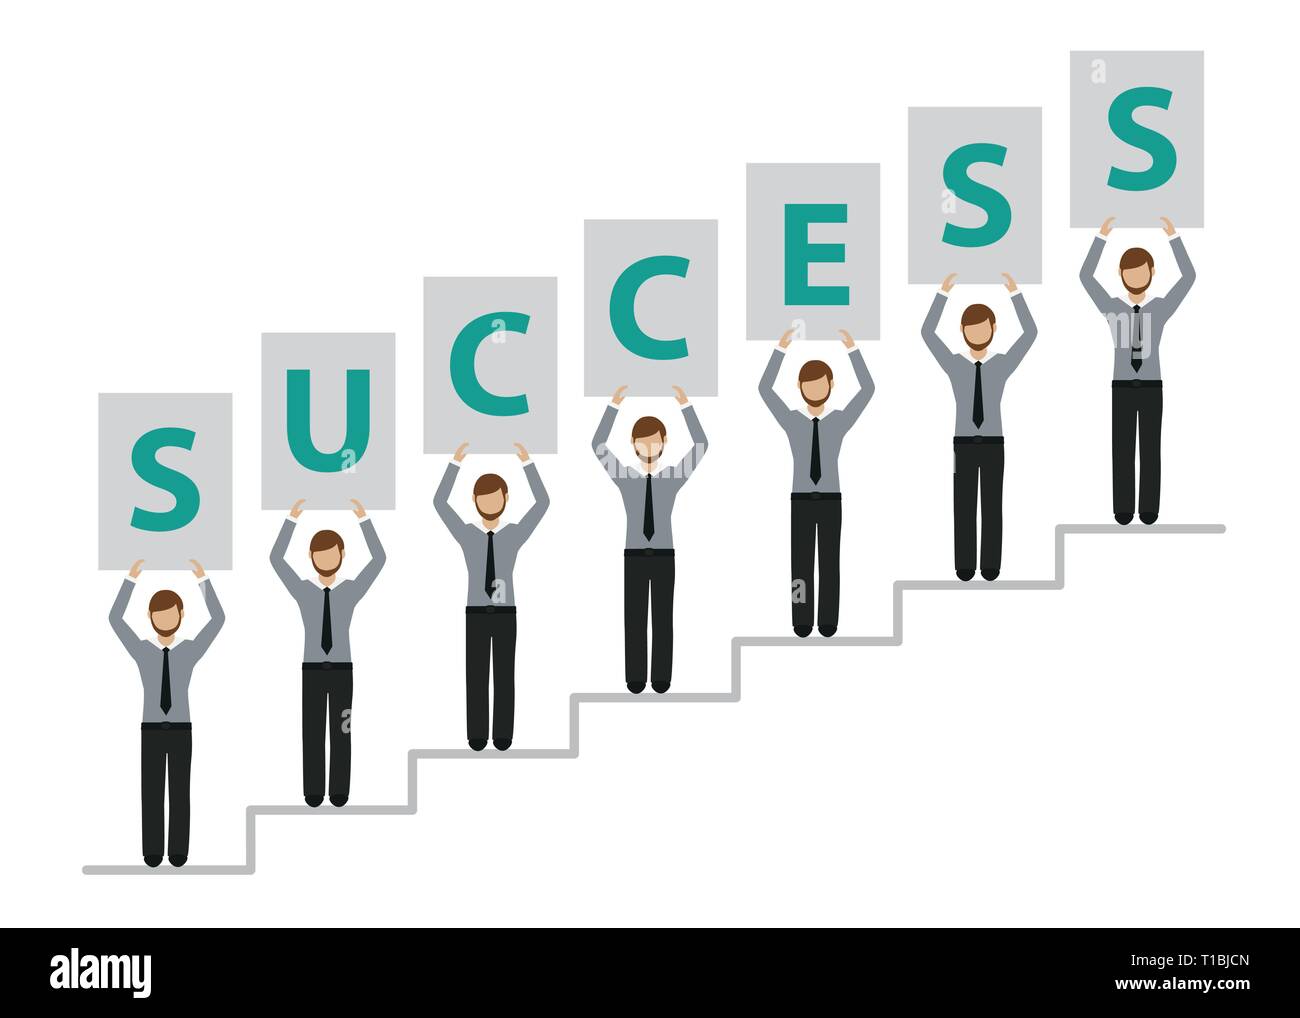 Menschen auf Erfolg Treppen business men Charakter Vektor-illustration EPS 10. Stock Vektor